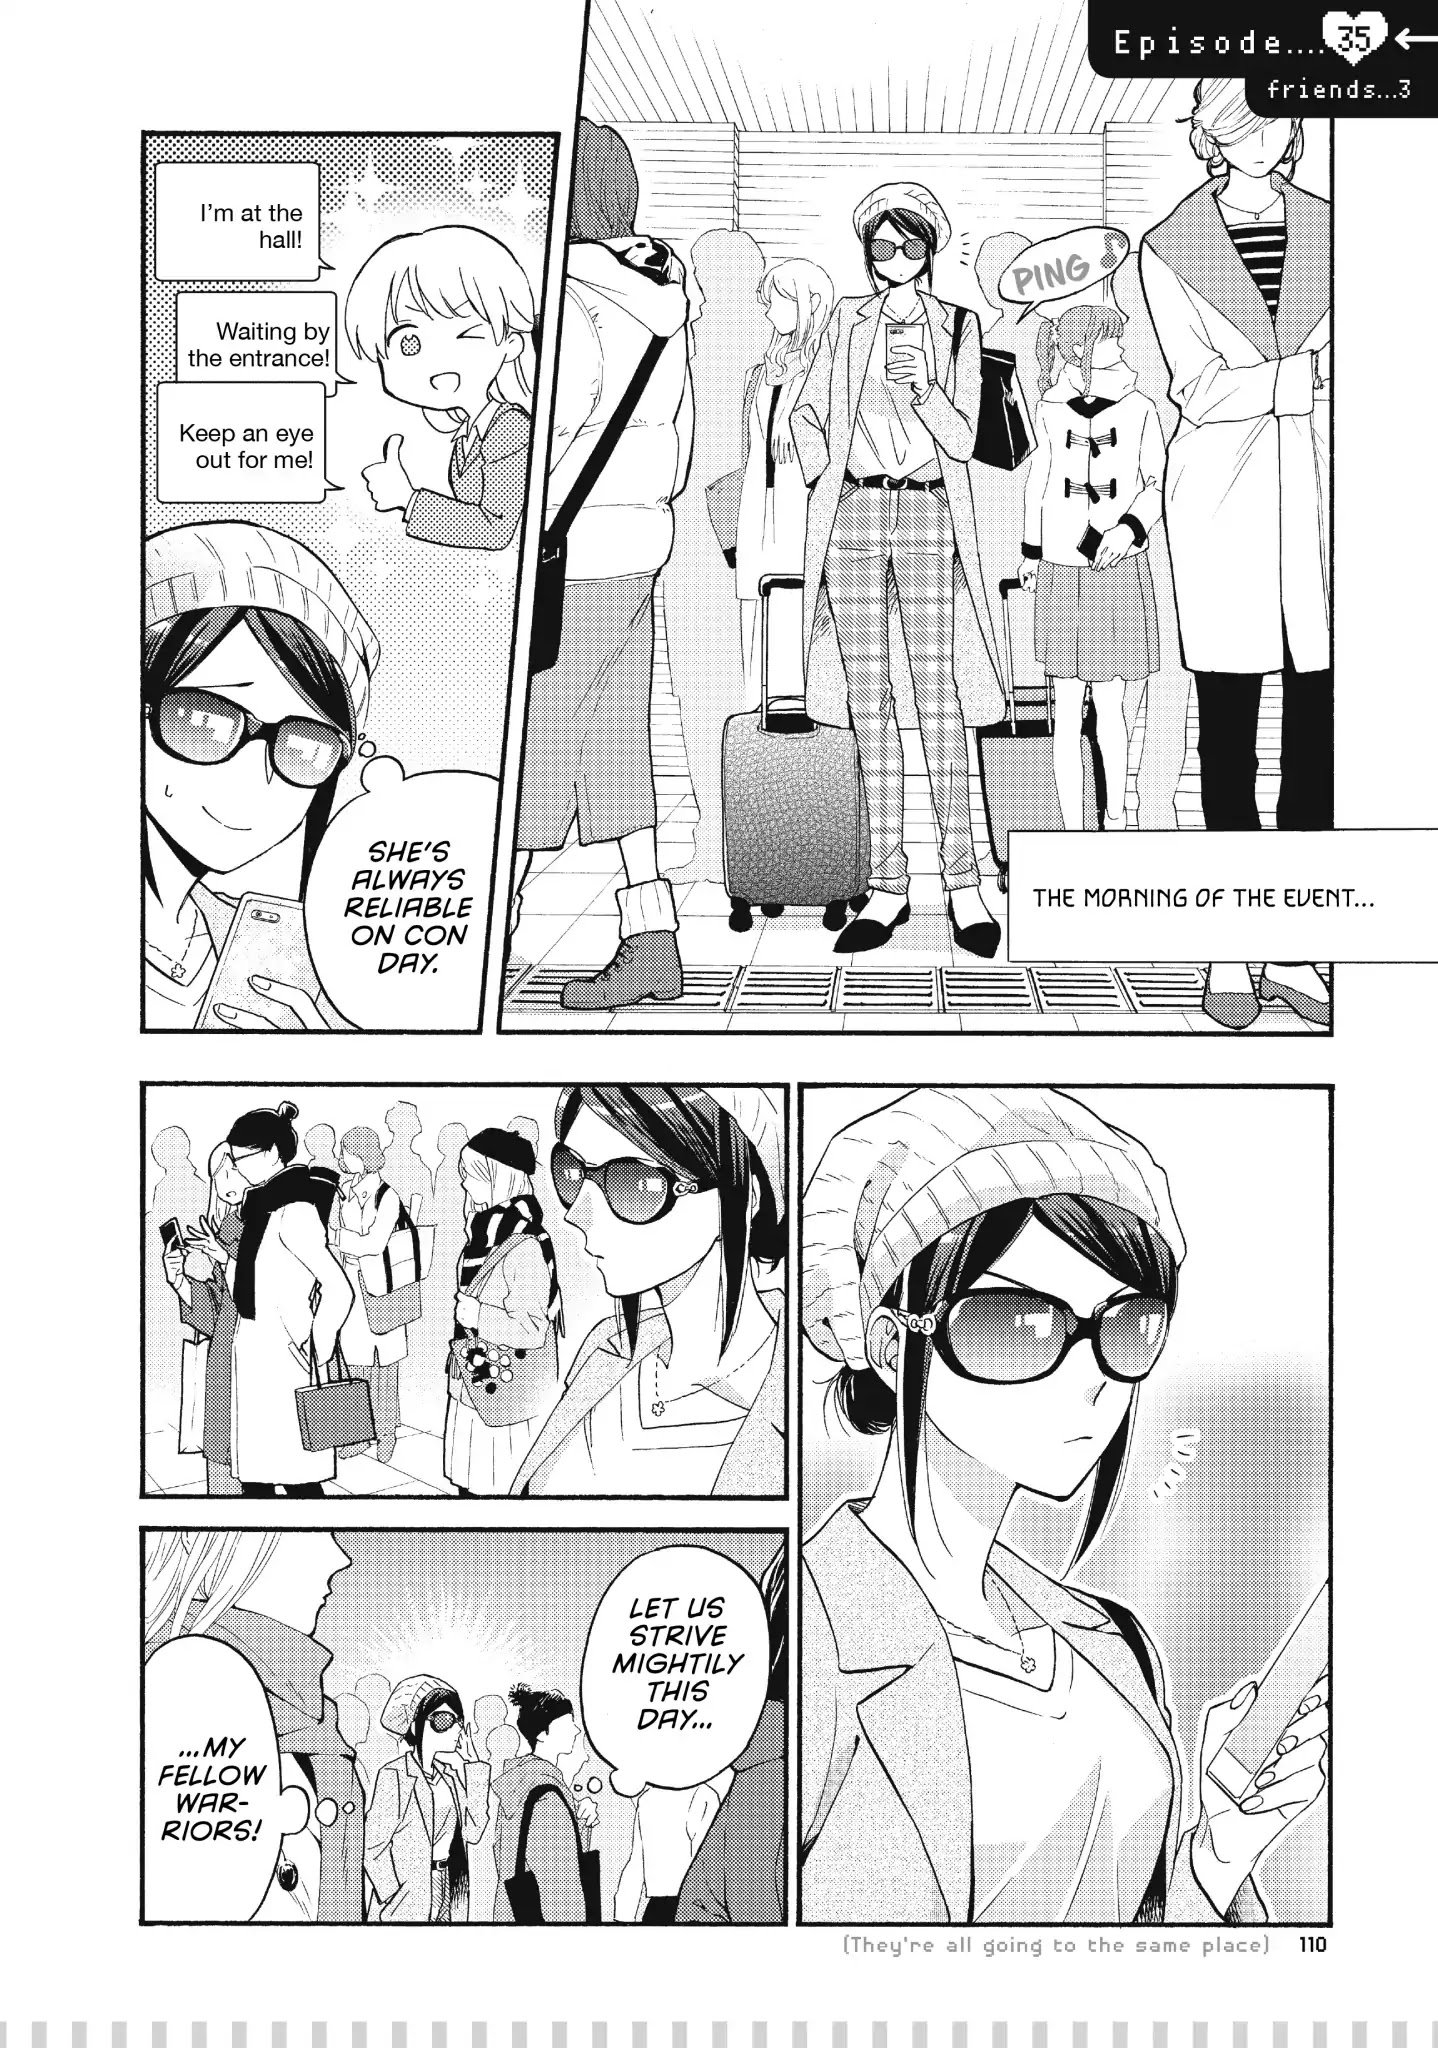 Read Wotaku ni Koi wa Muzukashii Manga English [New Chapters] Online Free -  MangaClash